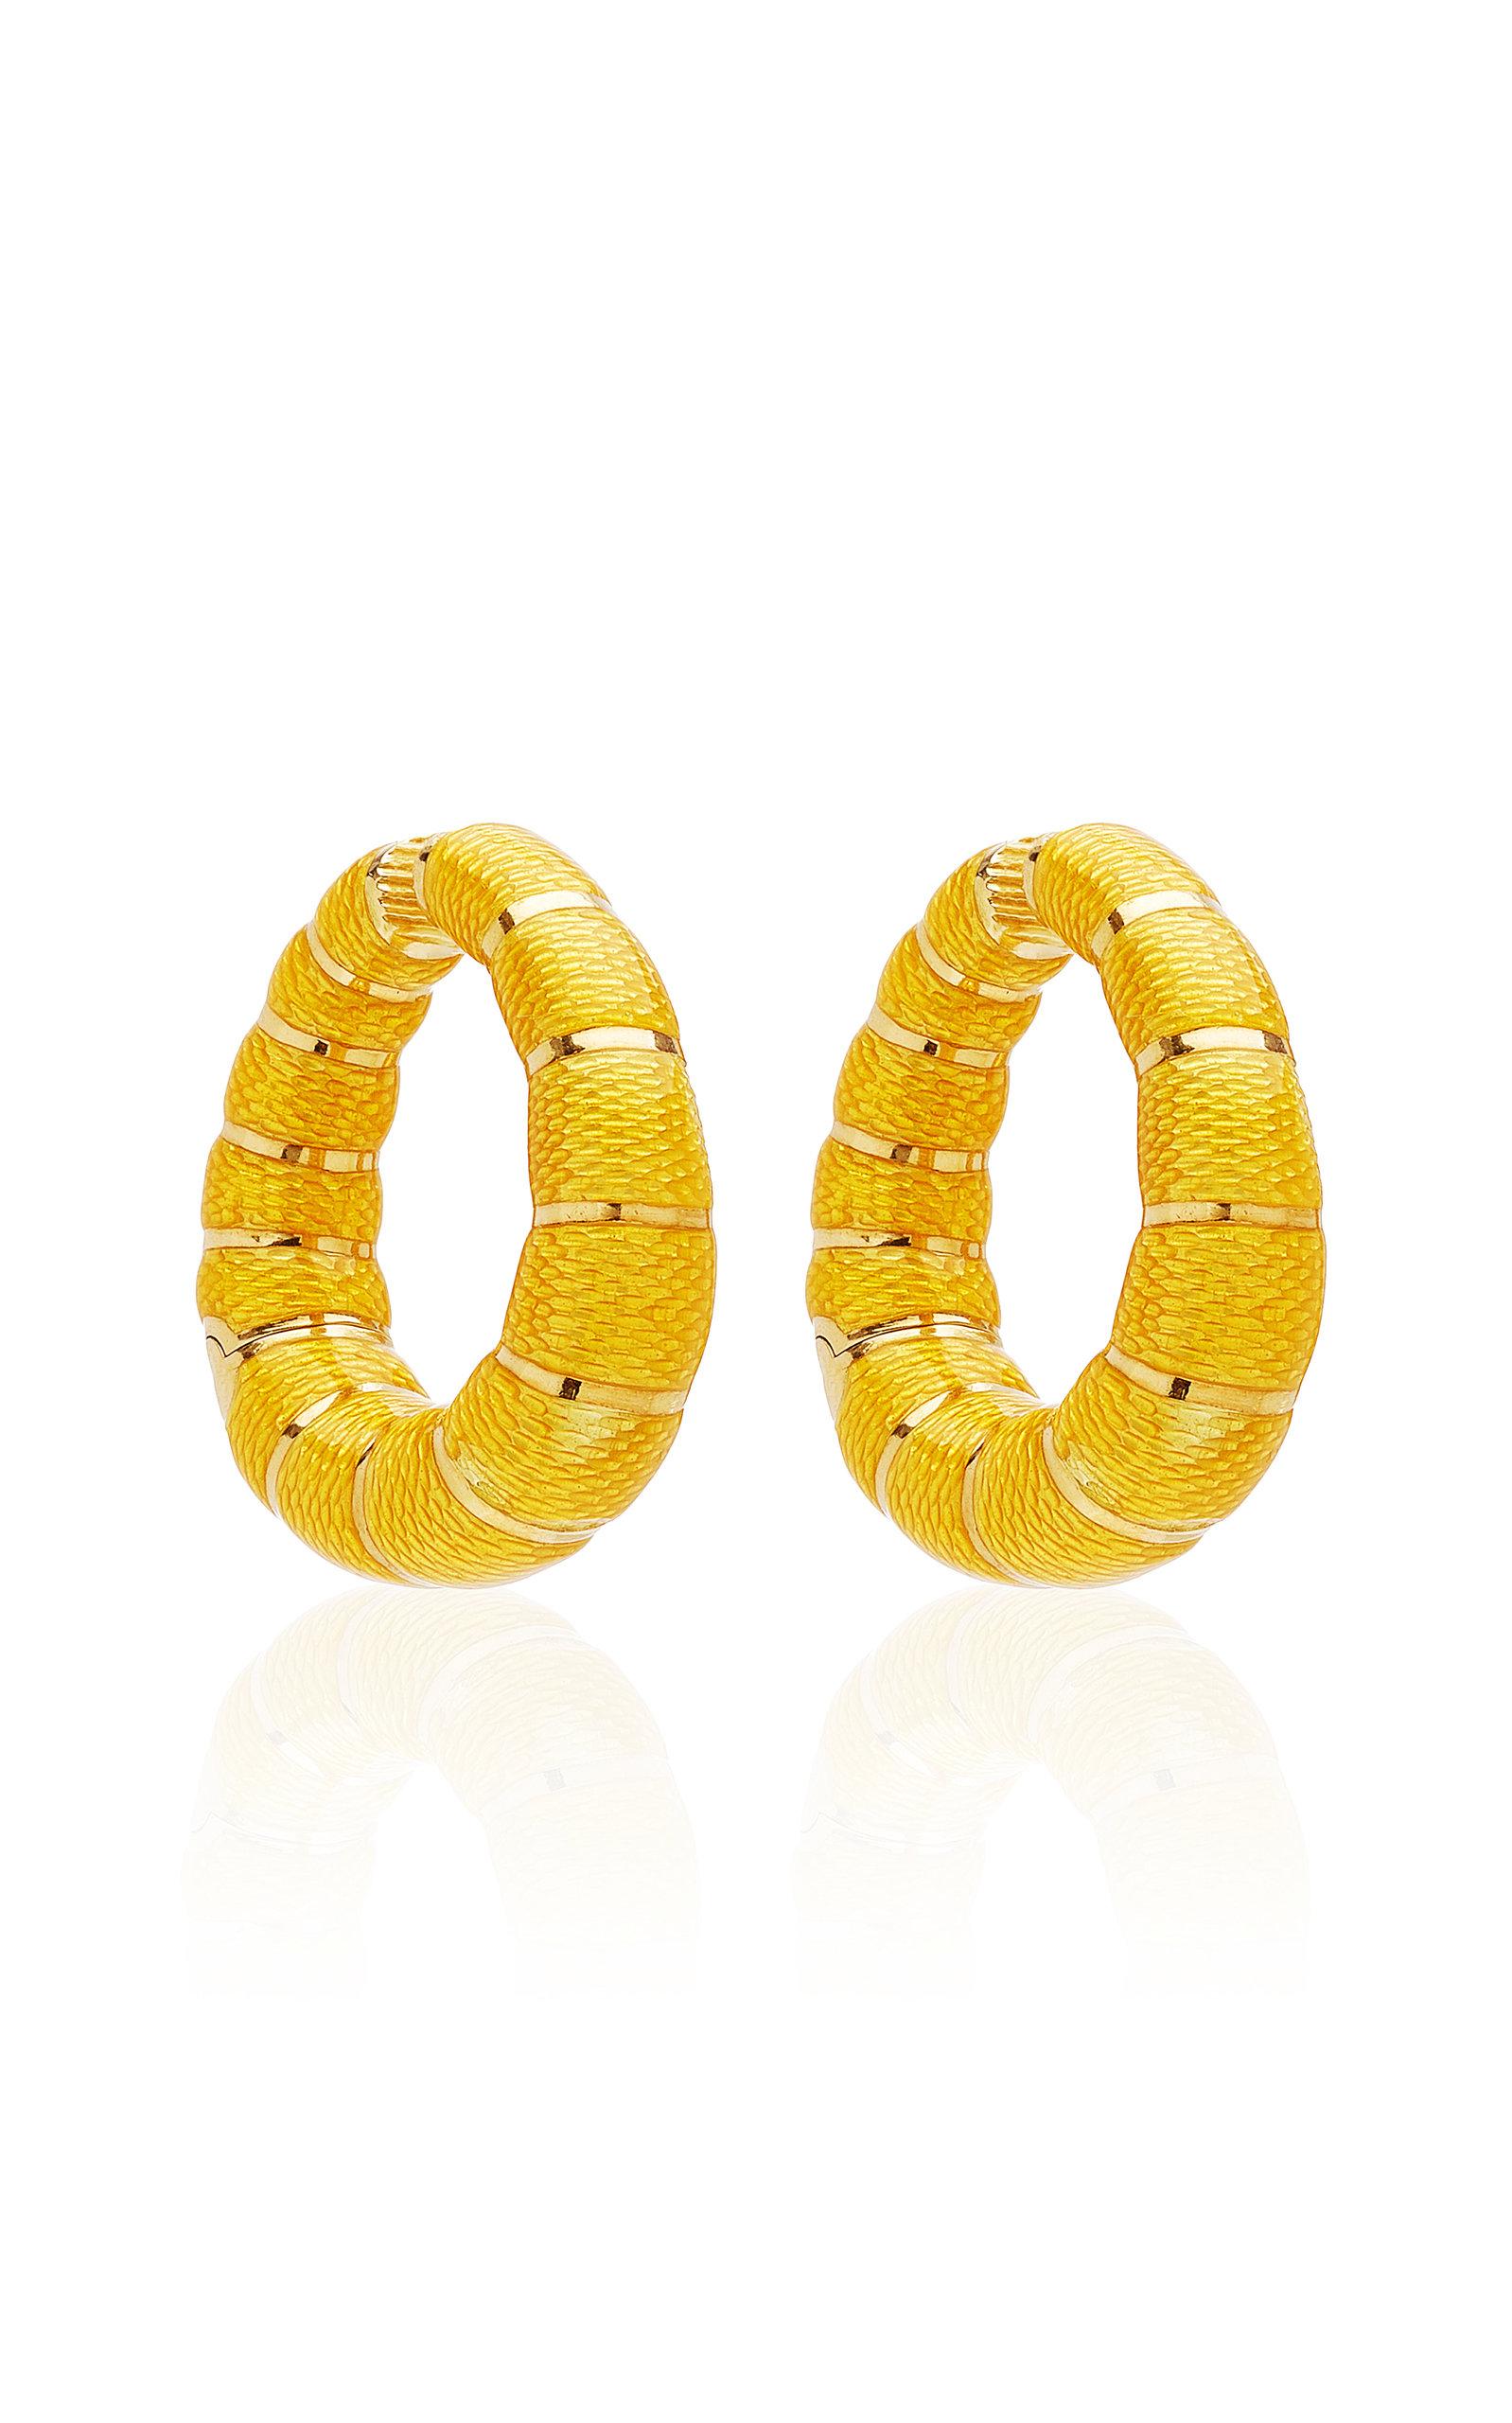 yellow enamel earrings